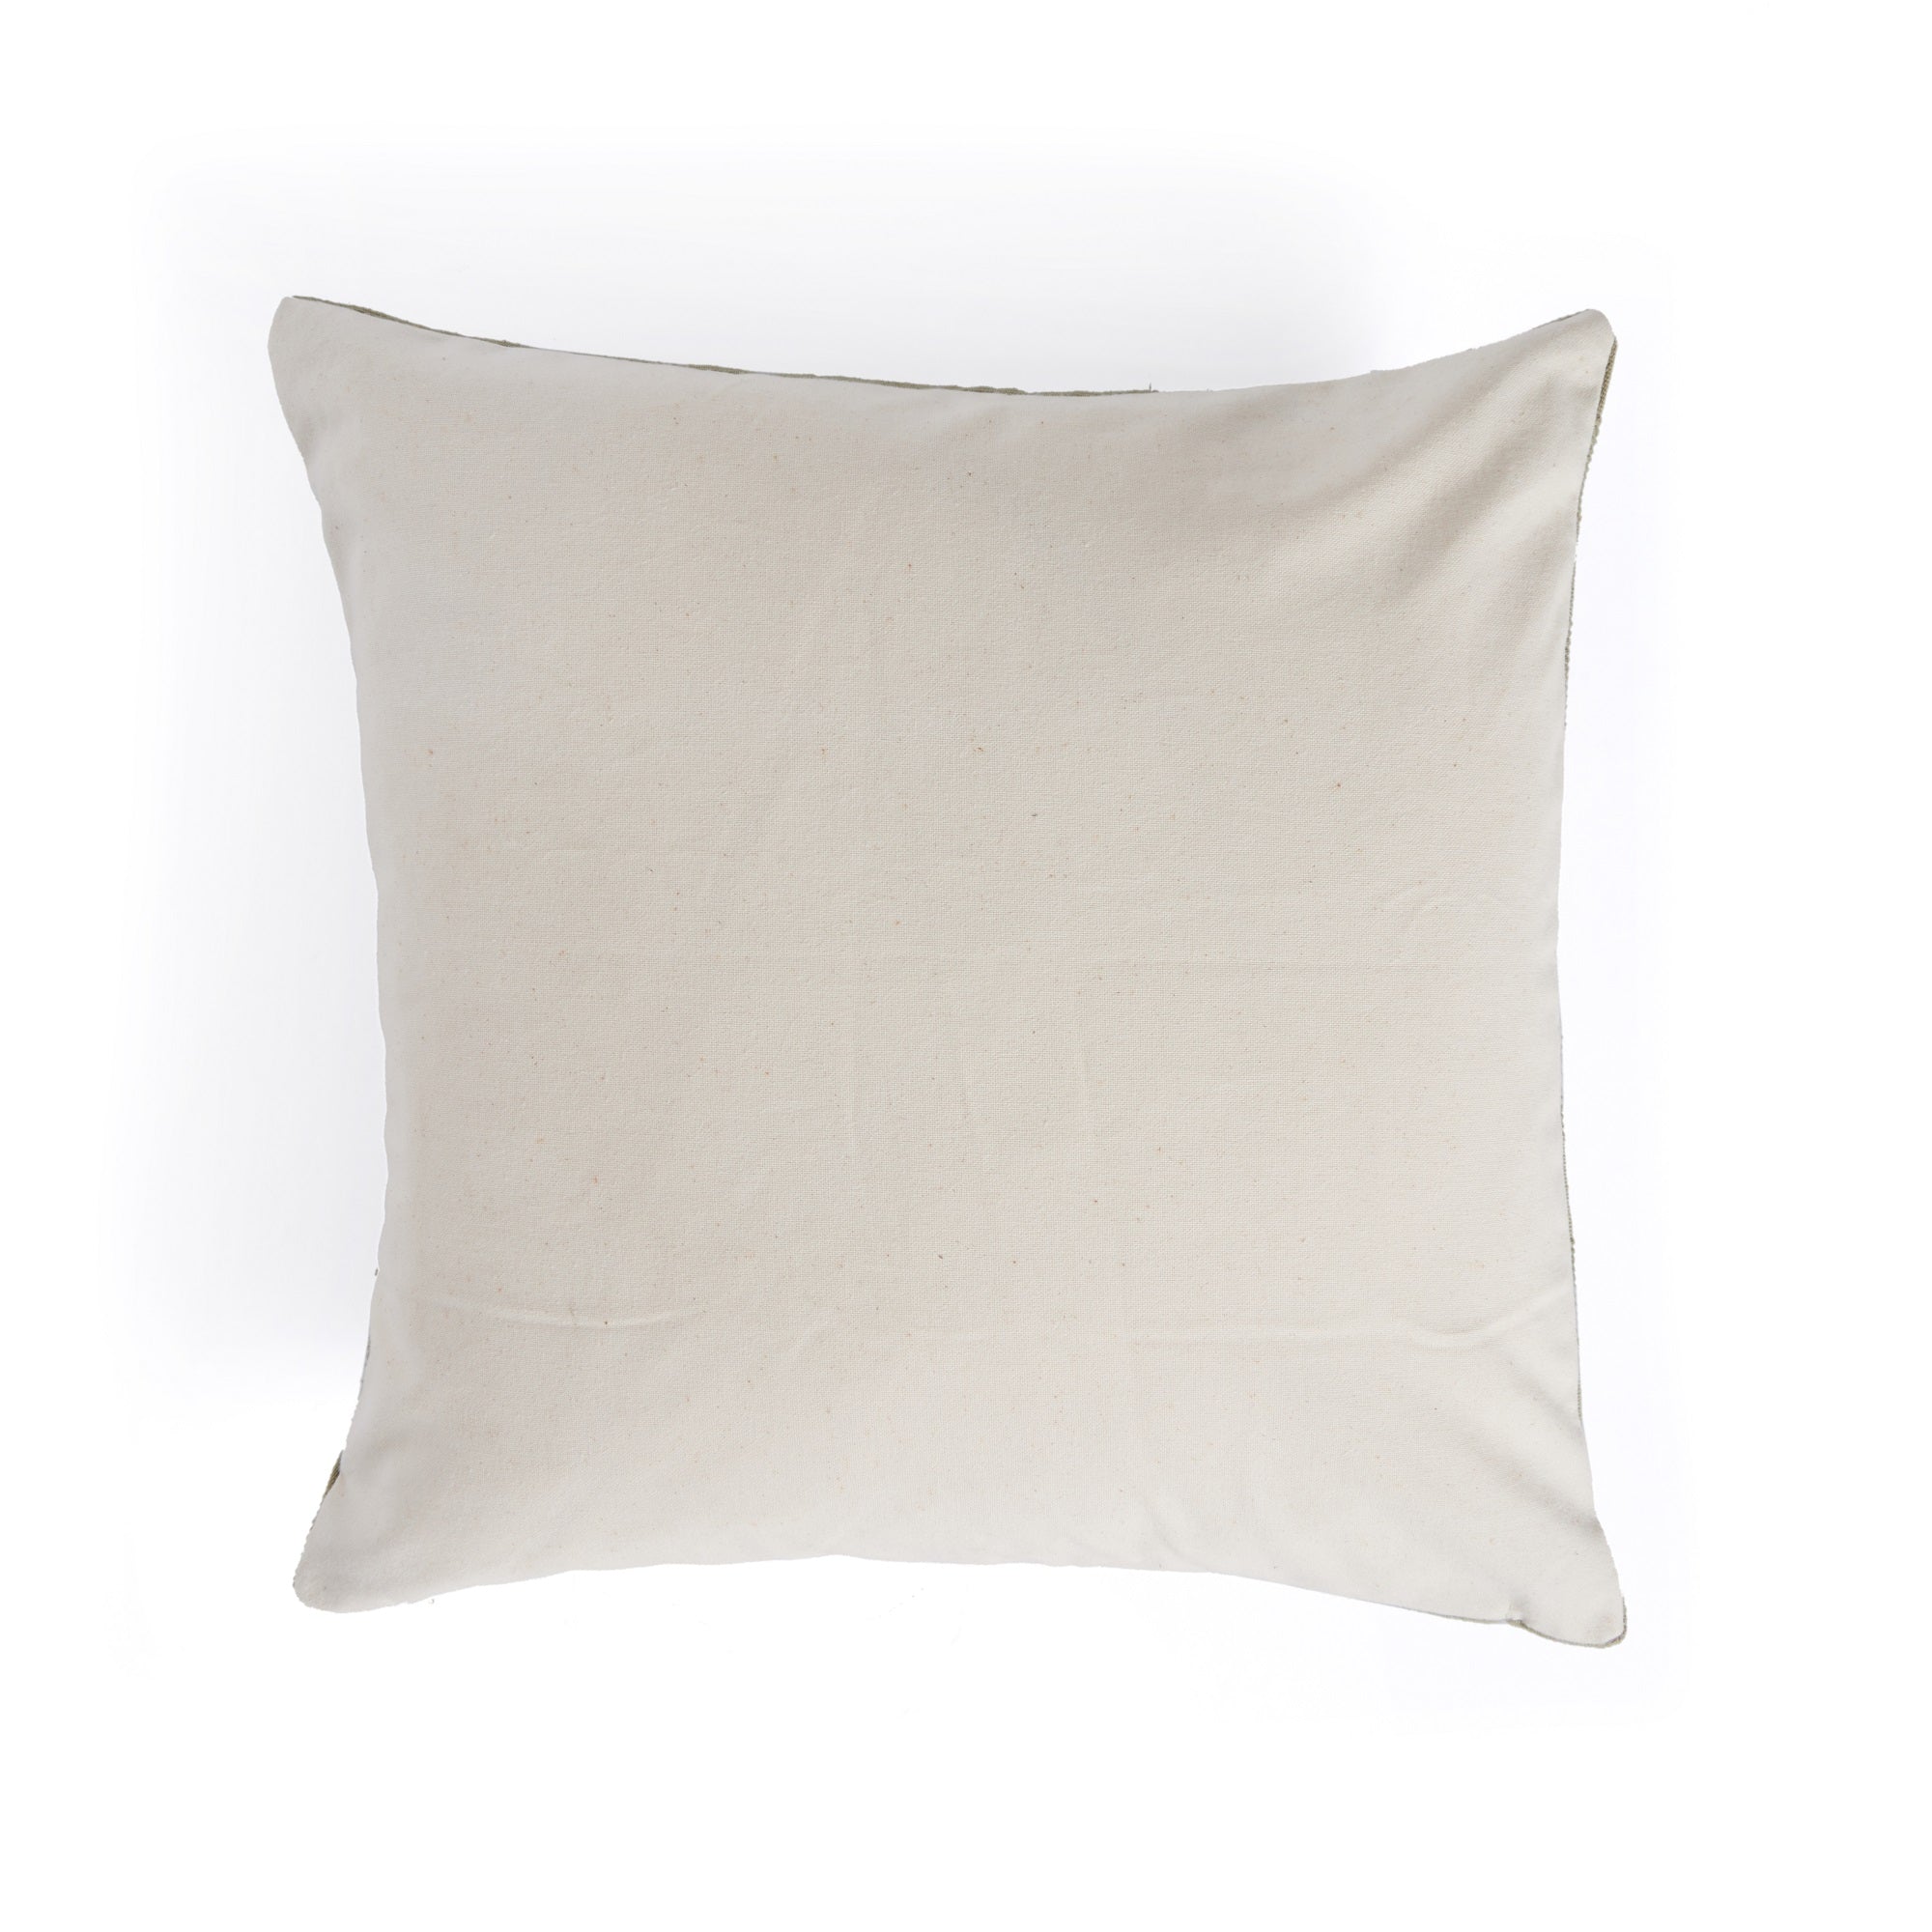 Dorian Handwoven Checked Pillow